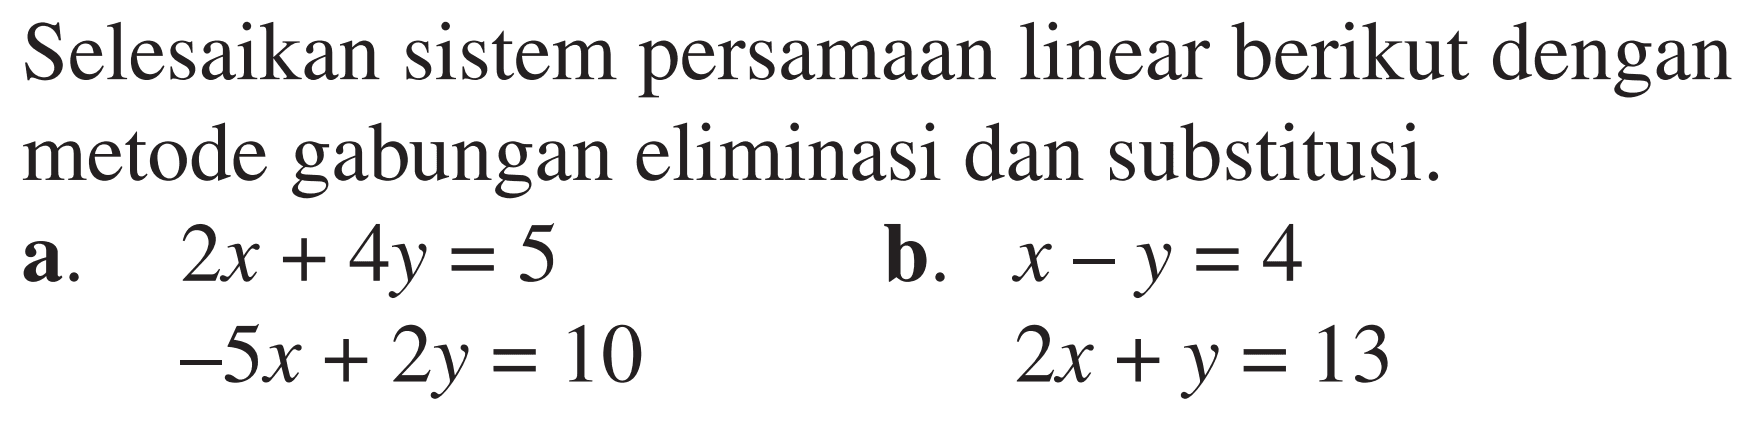 Selesaikan sistem persamaan linear berikut dengan metode gabungan eliminasi dan substitusi. a. 2x+4y=5 -5x+2y=10 b. x-y=4 2x+y=13